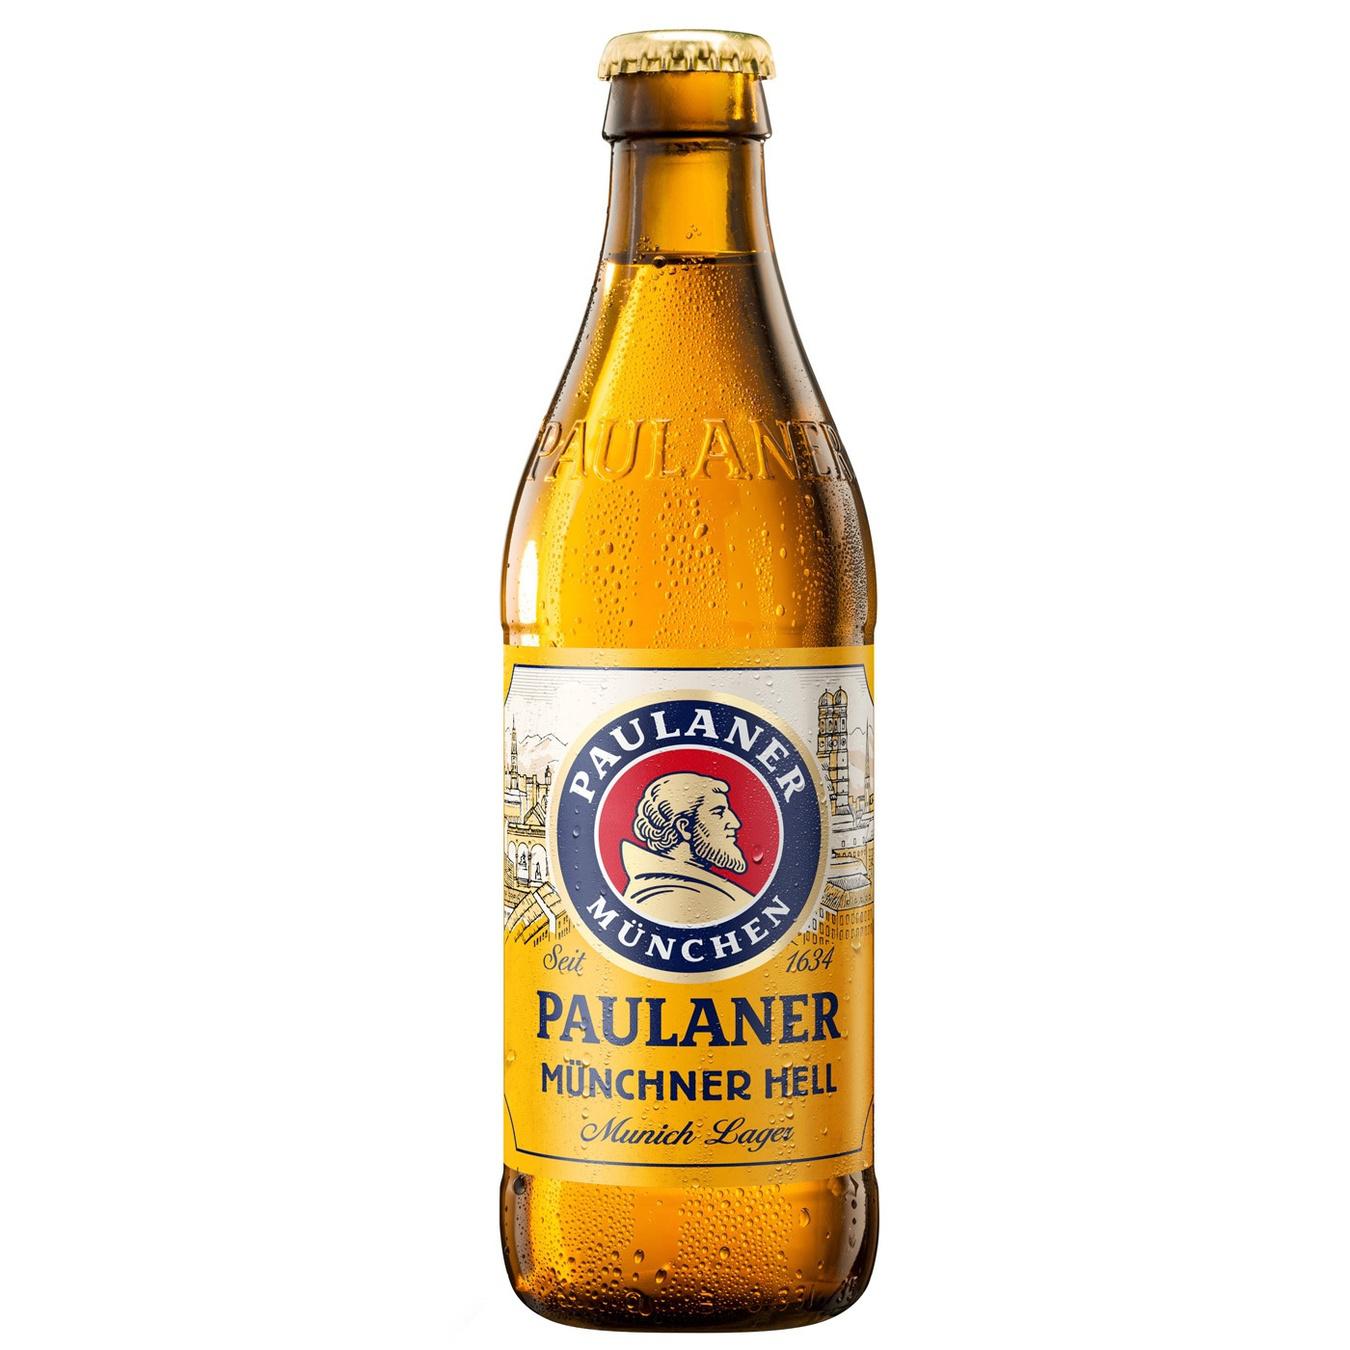 Light beer Paulaner Munchner Hell Lager 5.5% 0.5l glass bottle